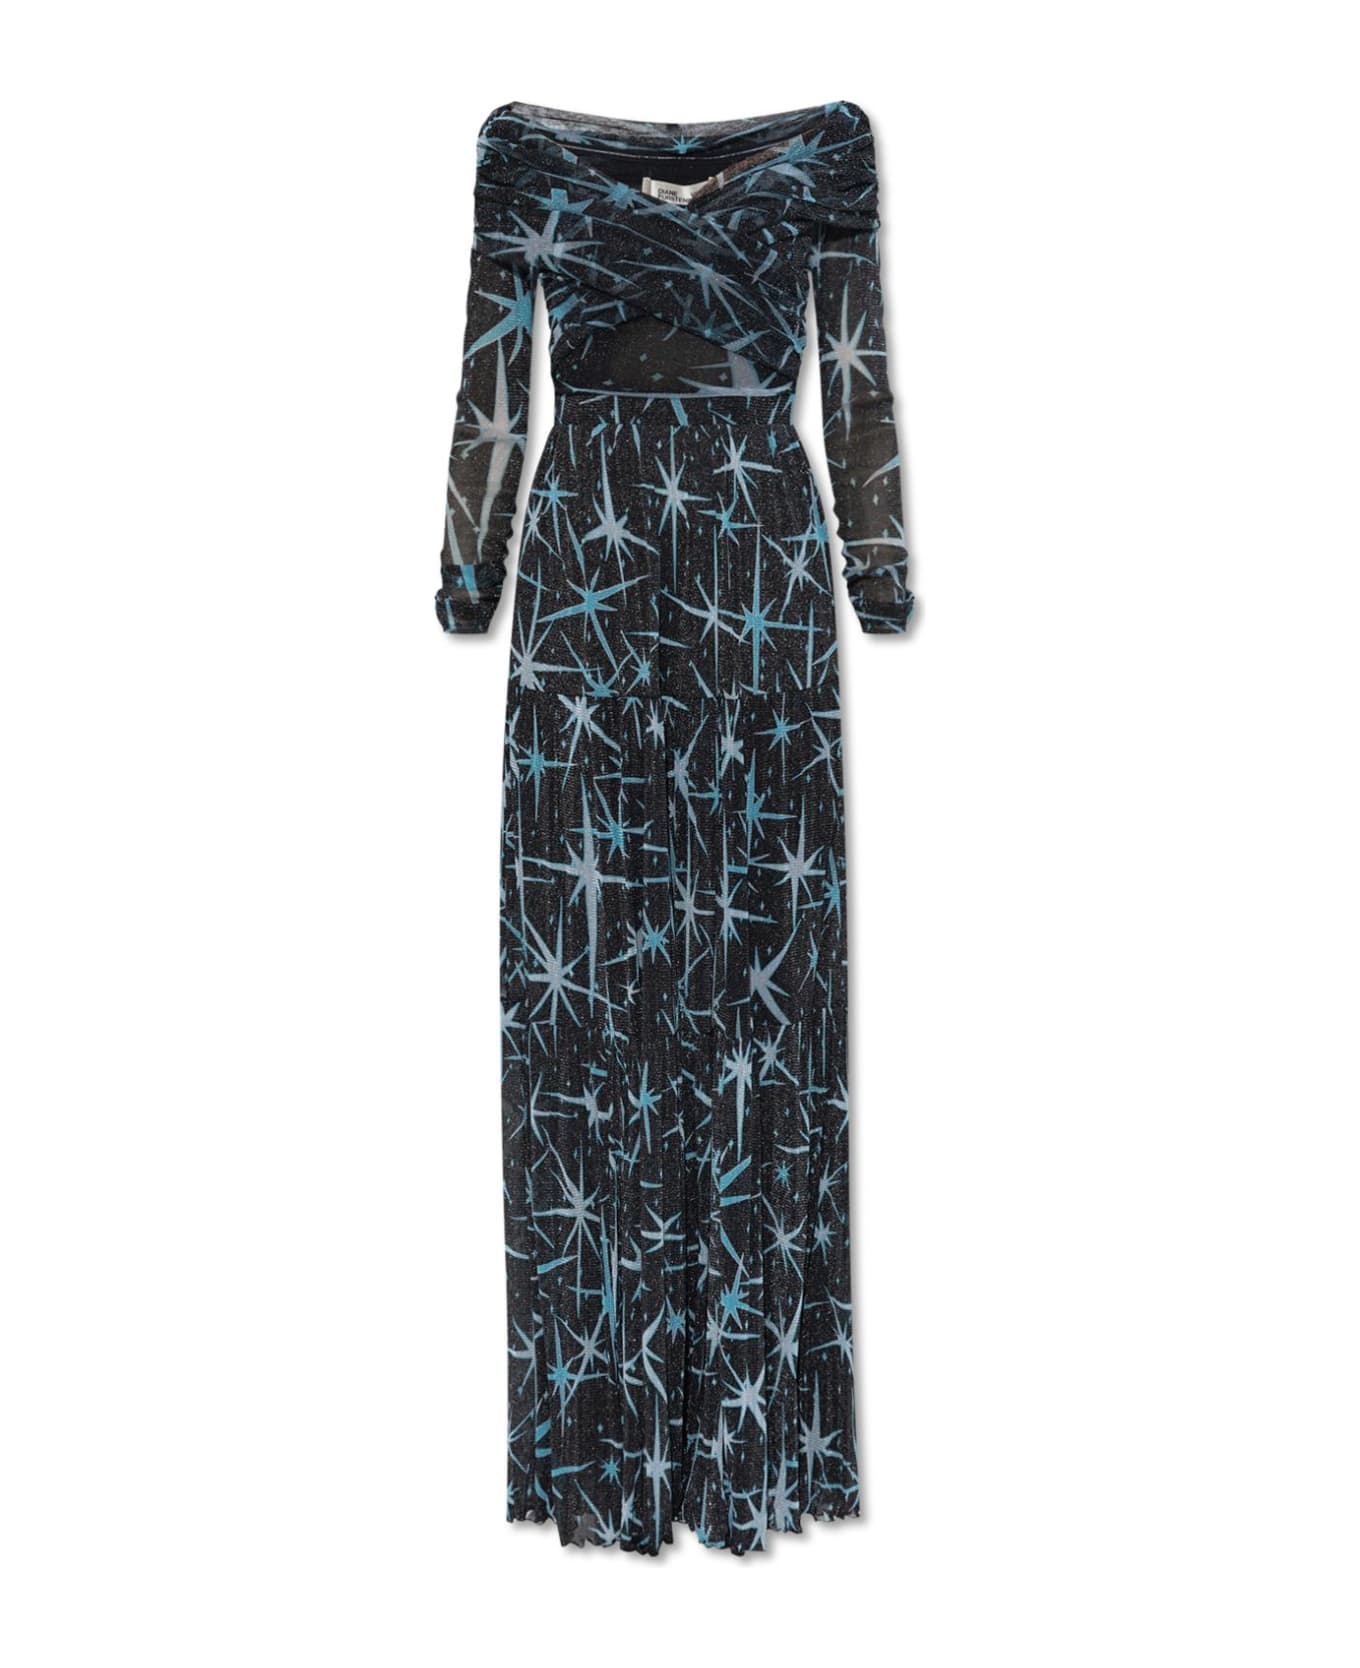 Diane Von Furstenberg Dress With Lurex Threads - BLACK/BLUE